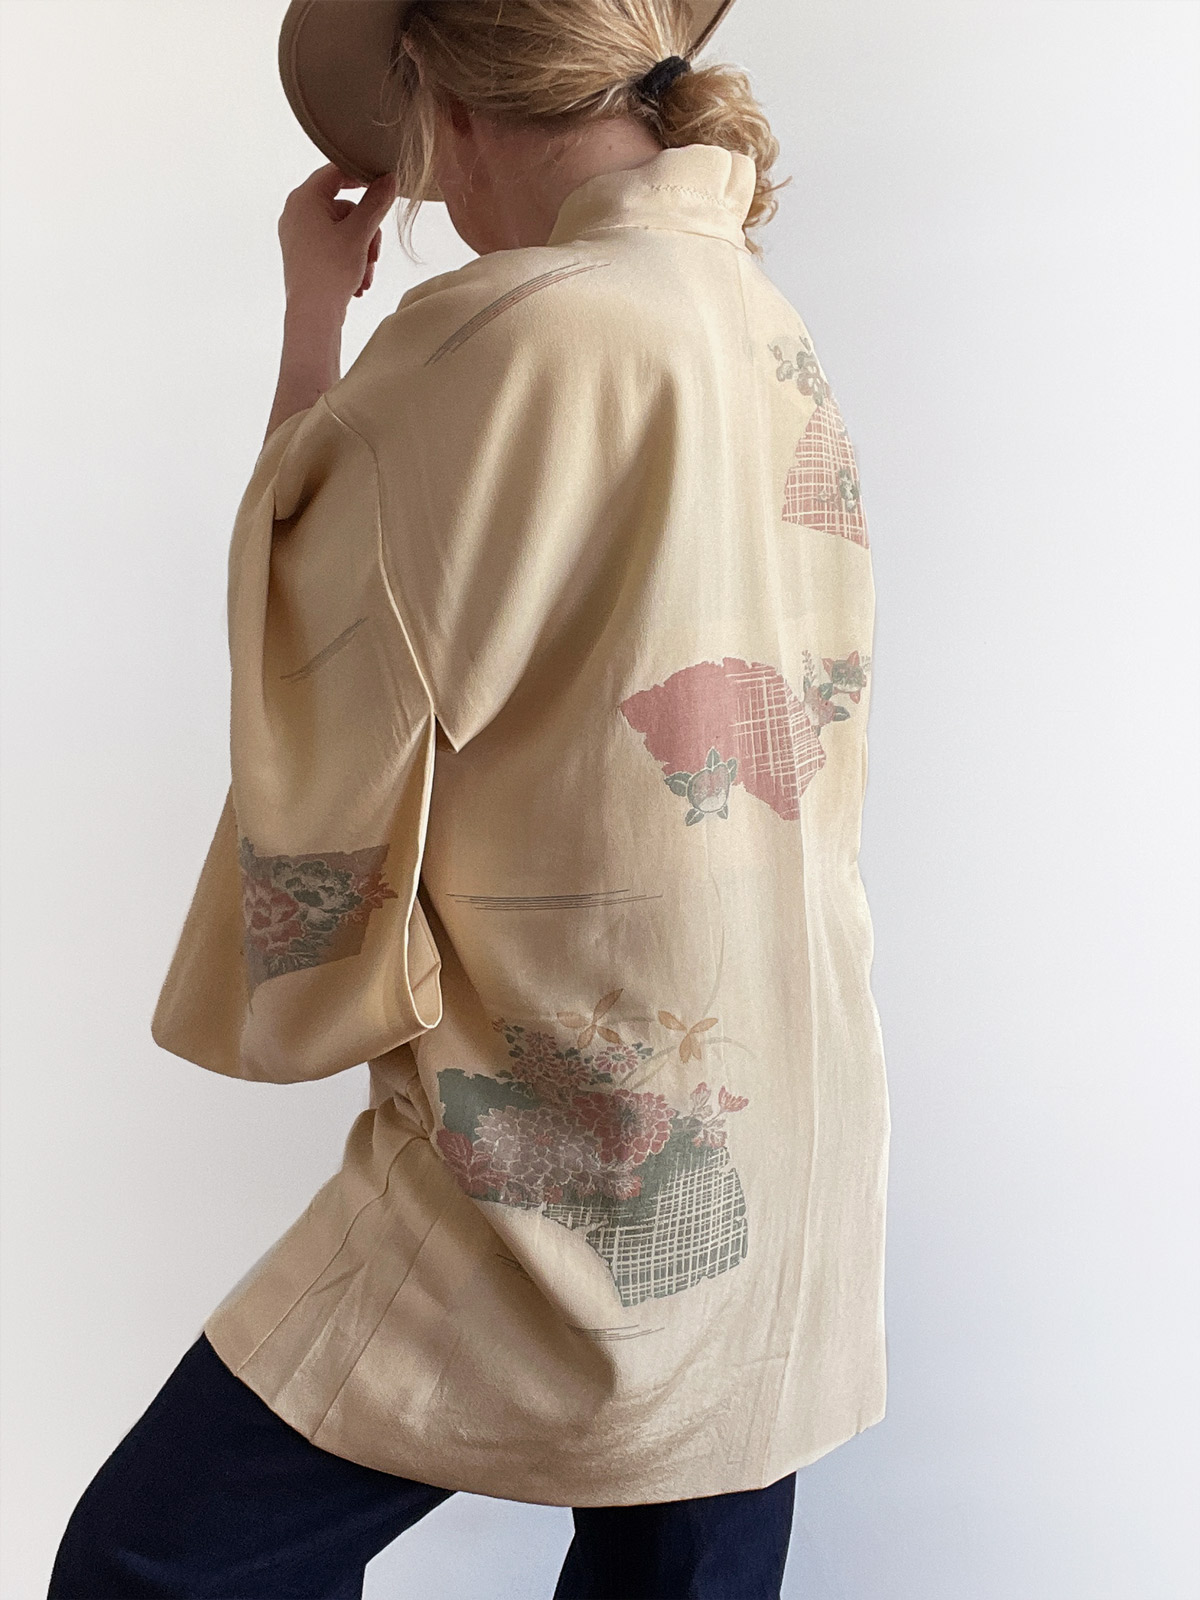 Yugana – elegant silk Haori (Kimono jacket) in a creamy vanilla color